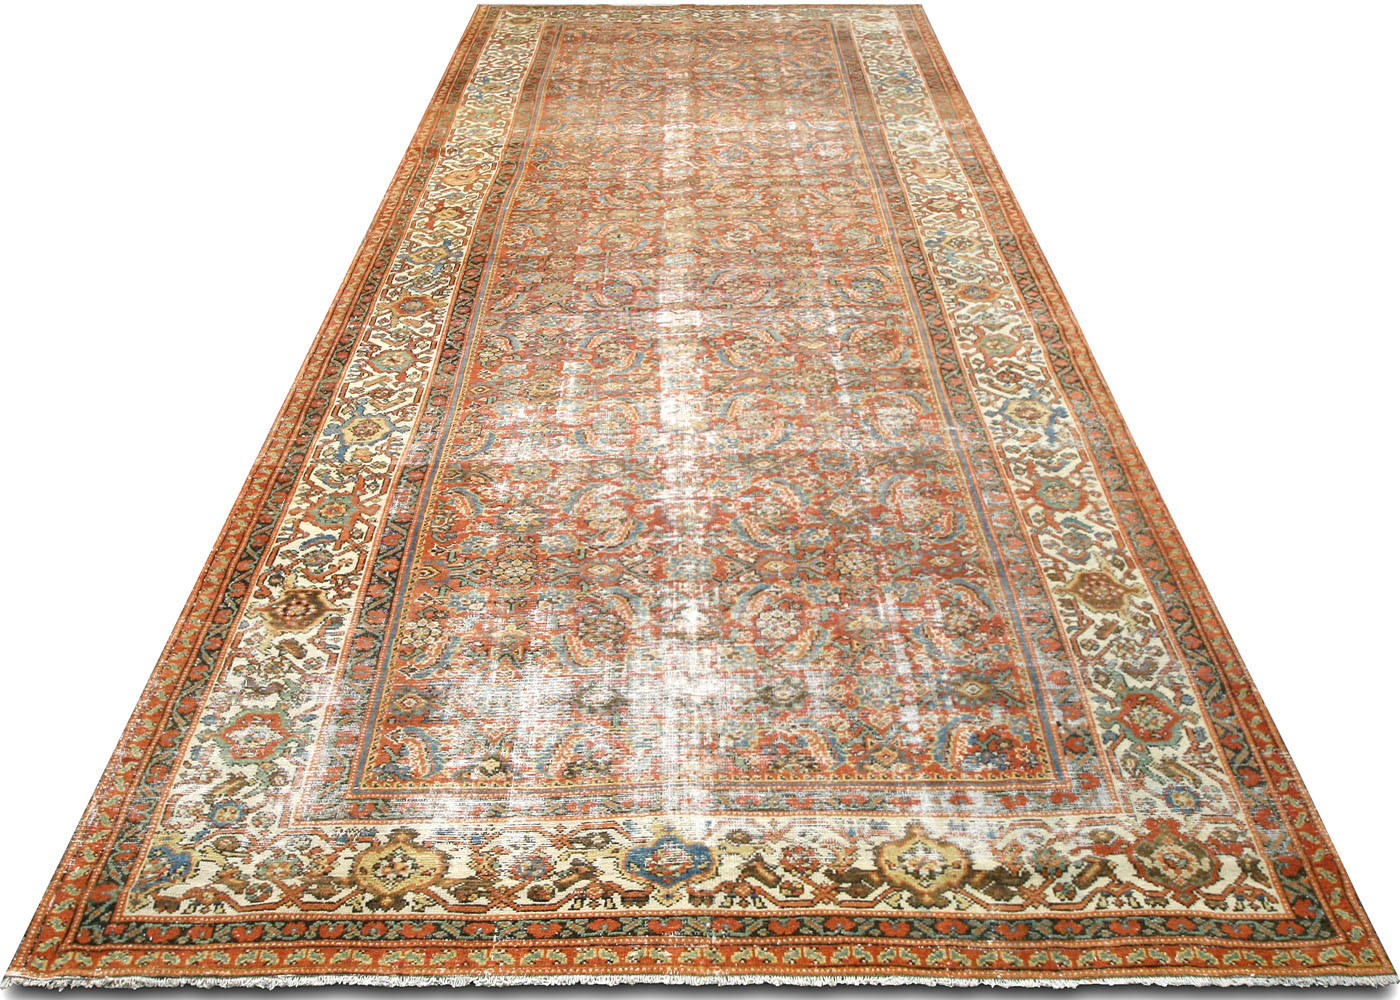 Antique Persian Mahal Rug - 6'6" x 16'5"